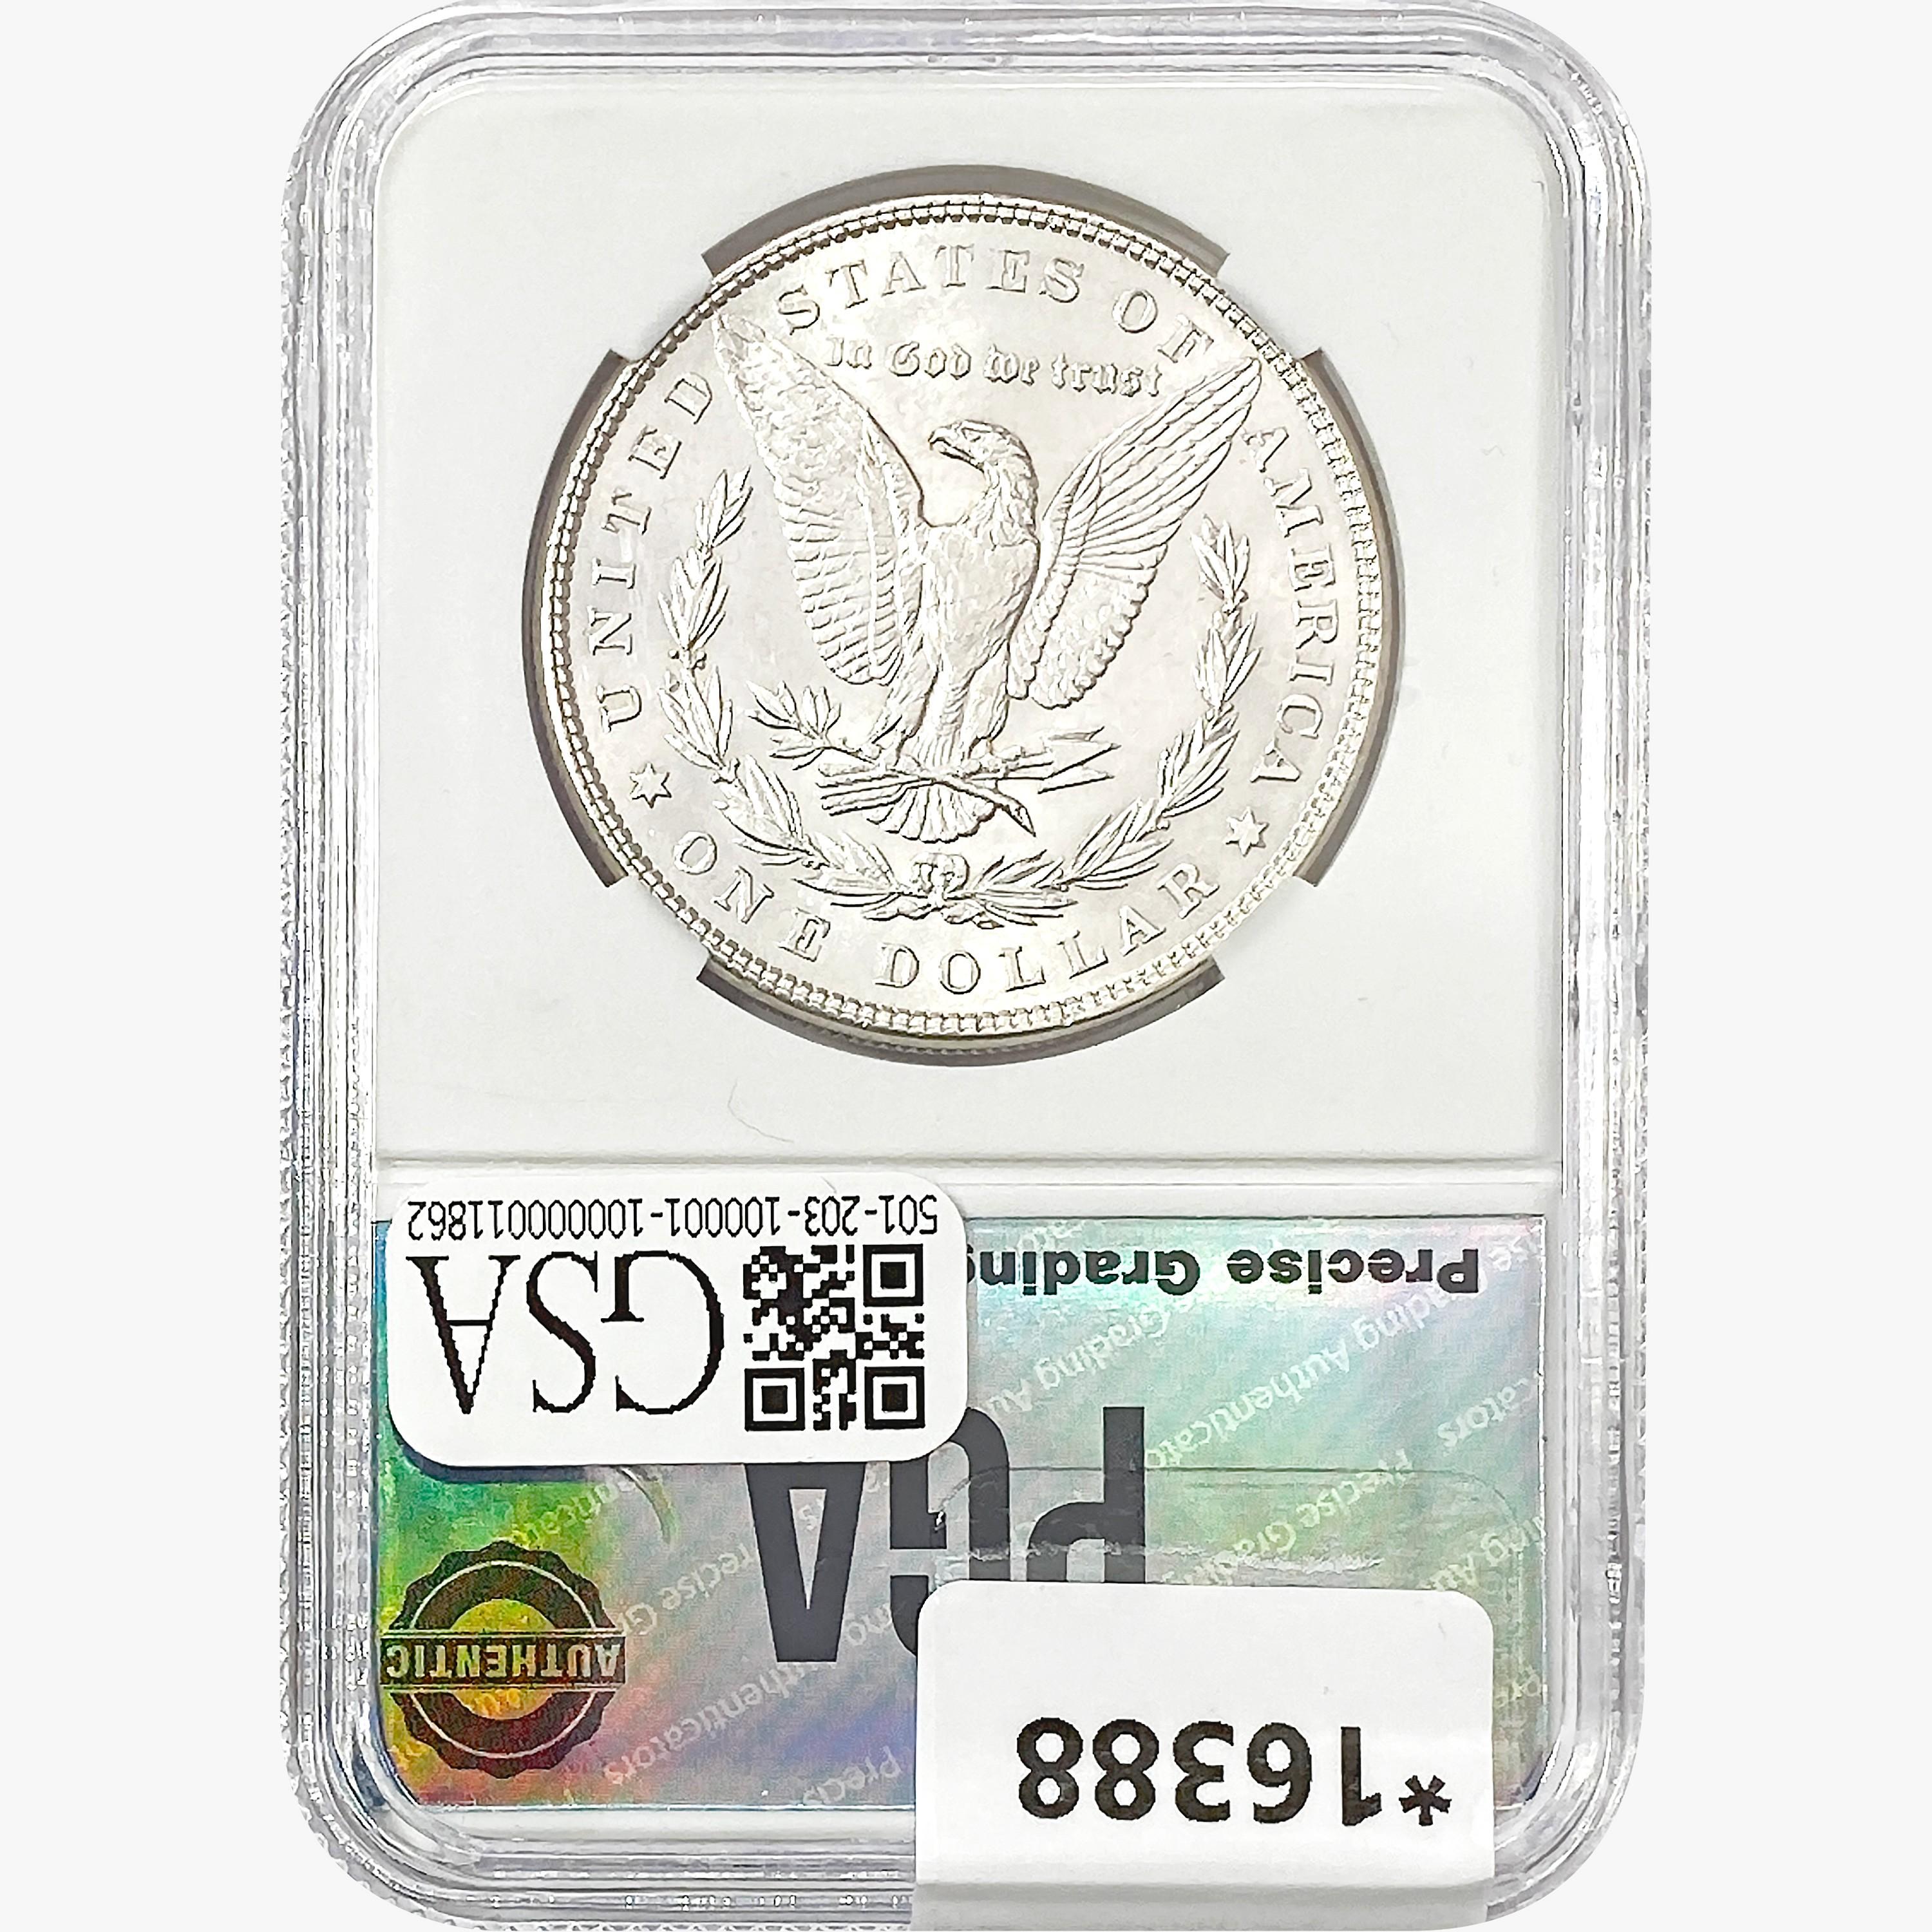 1878 7TF Morgan Silver Dollar PGA MS65+ REV 79